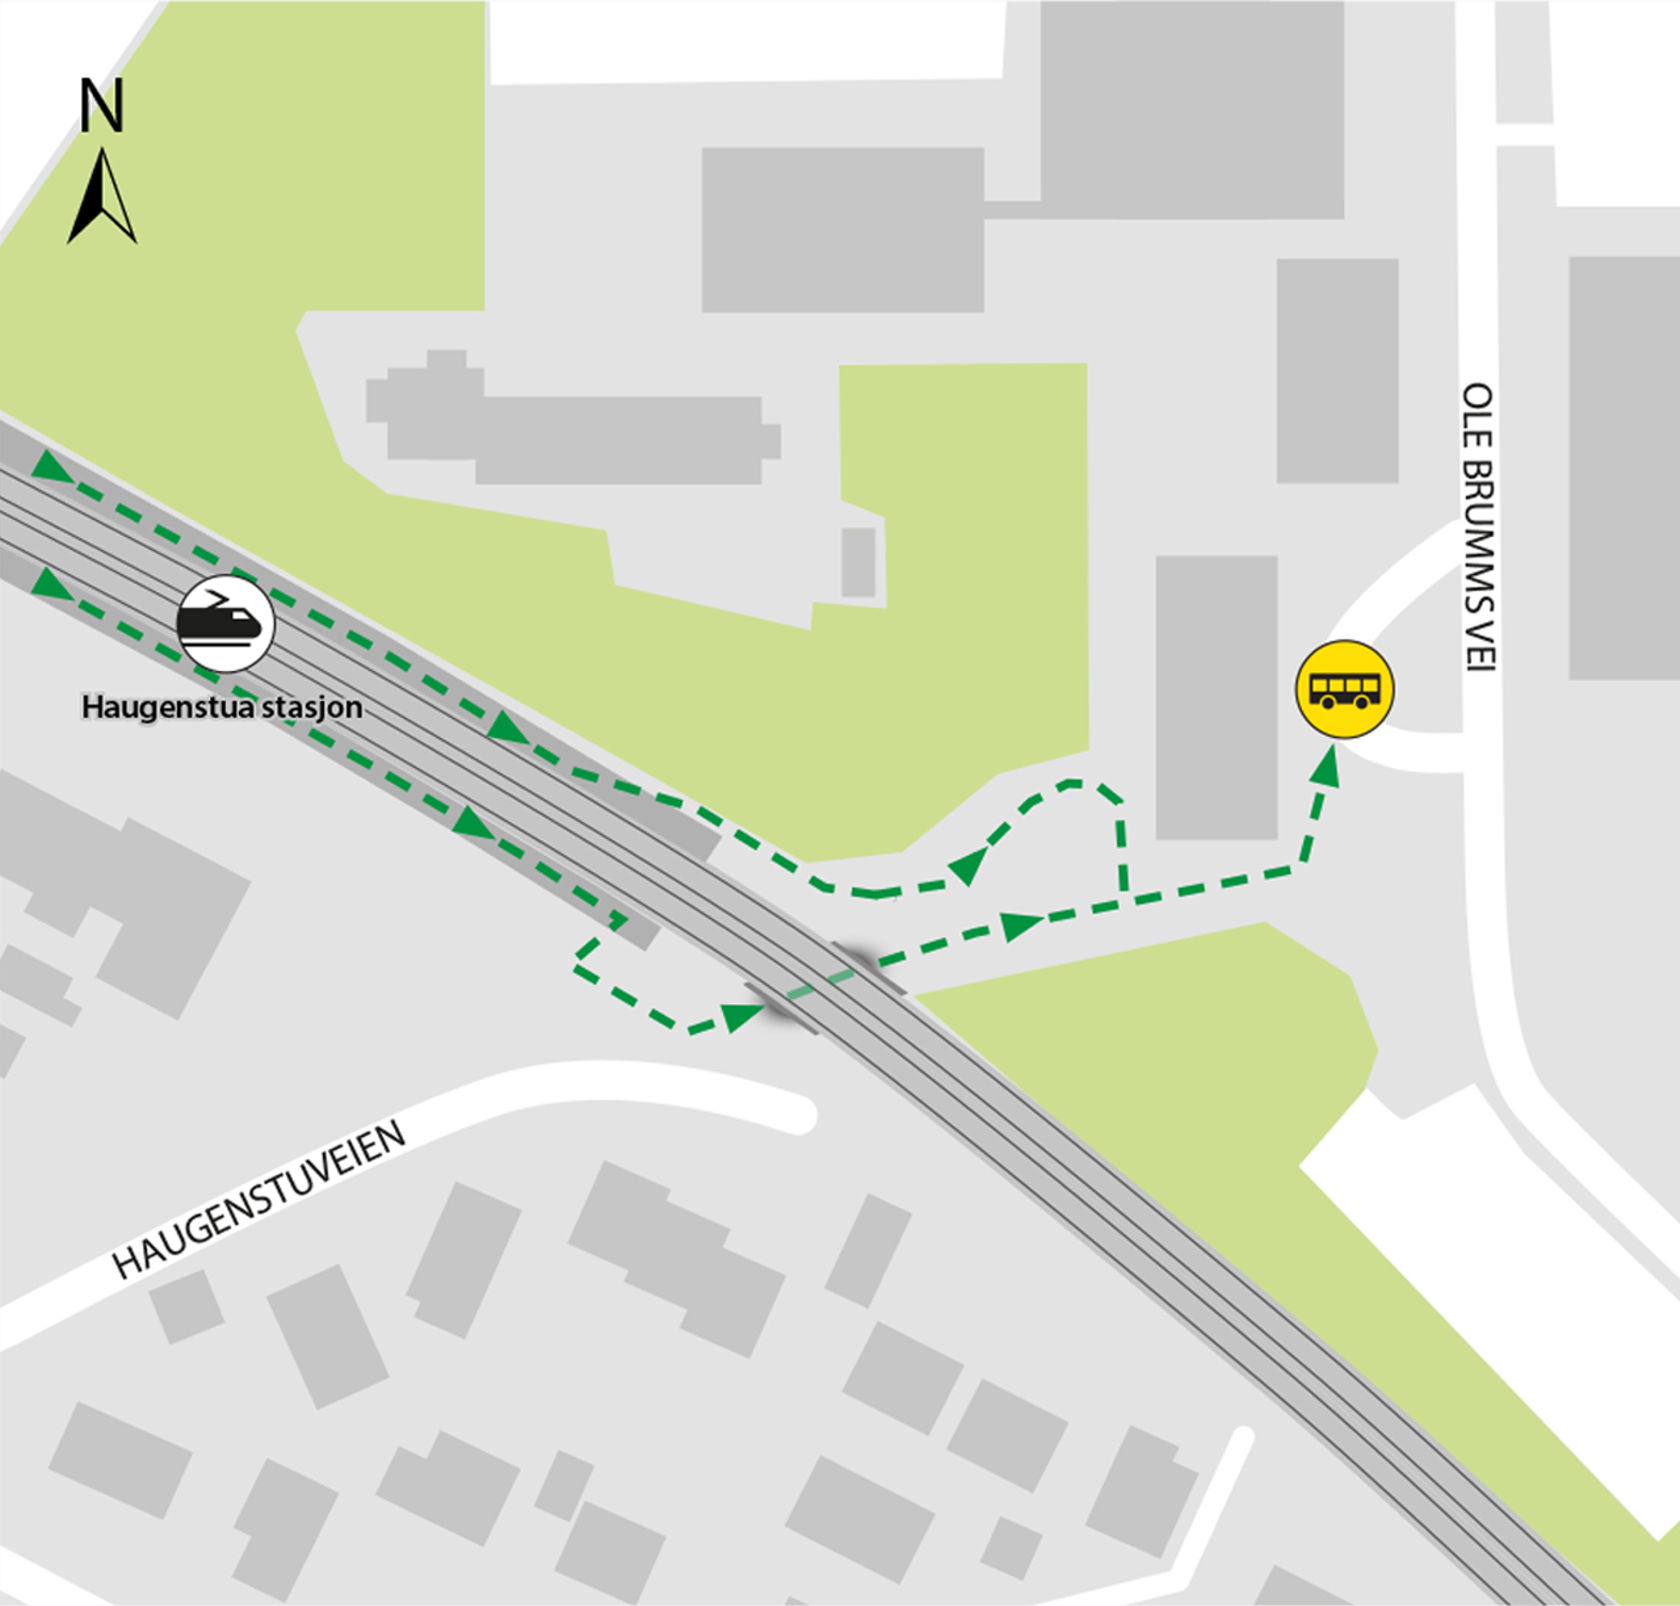 Kart som viser at bussene kjører fra bussholdeplassen Haugenstua stasjon. 